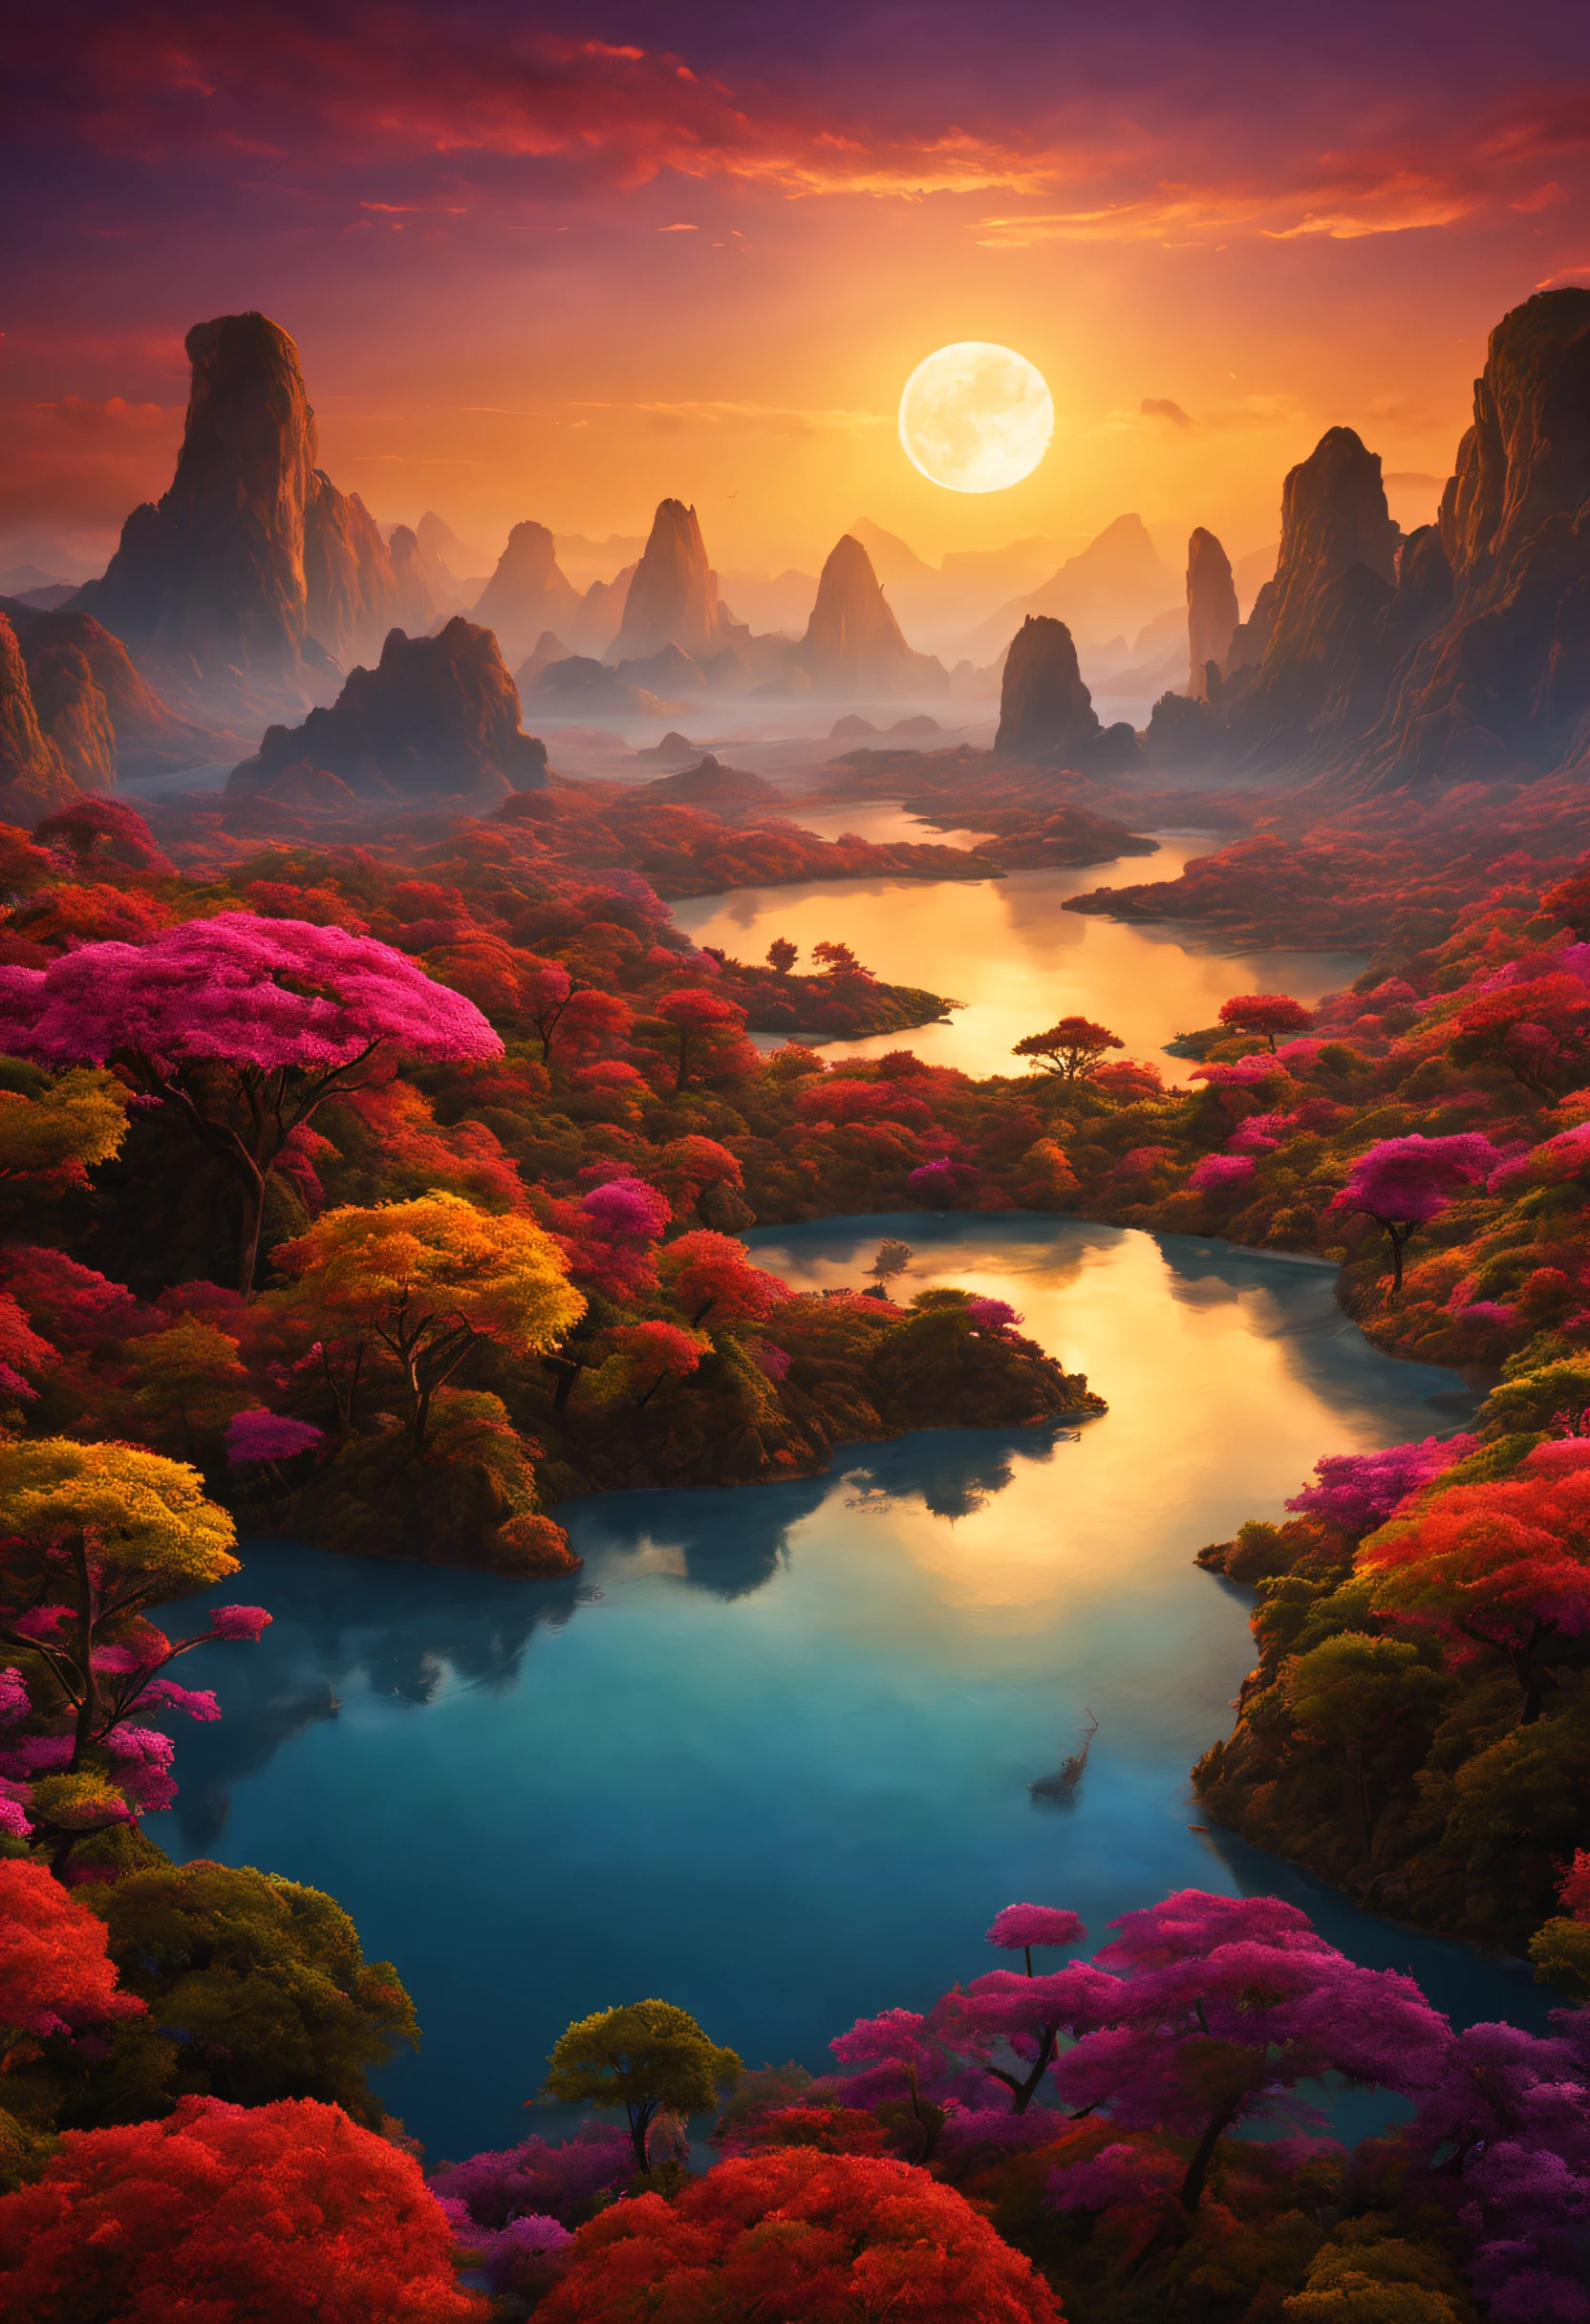 Un hermoso y magnífico paisaje imaginario en un planeta exótico con muchos atardeceres de colores y una extraordinaria